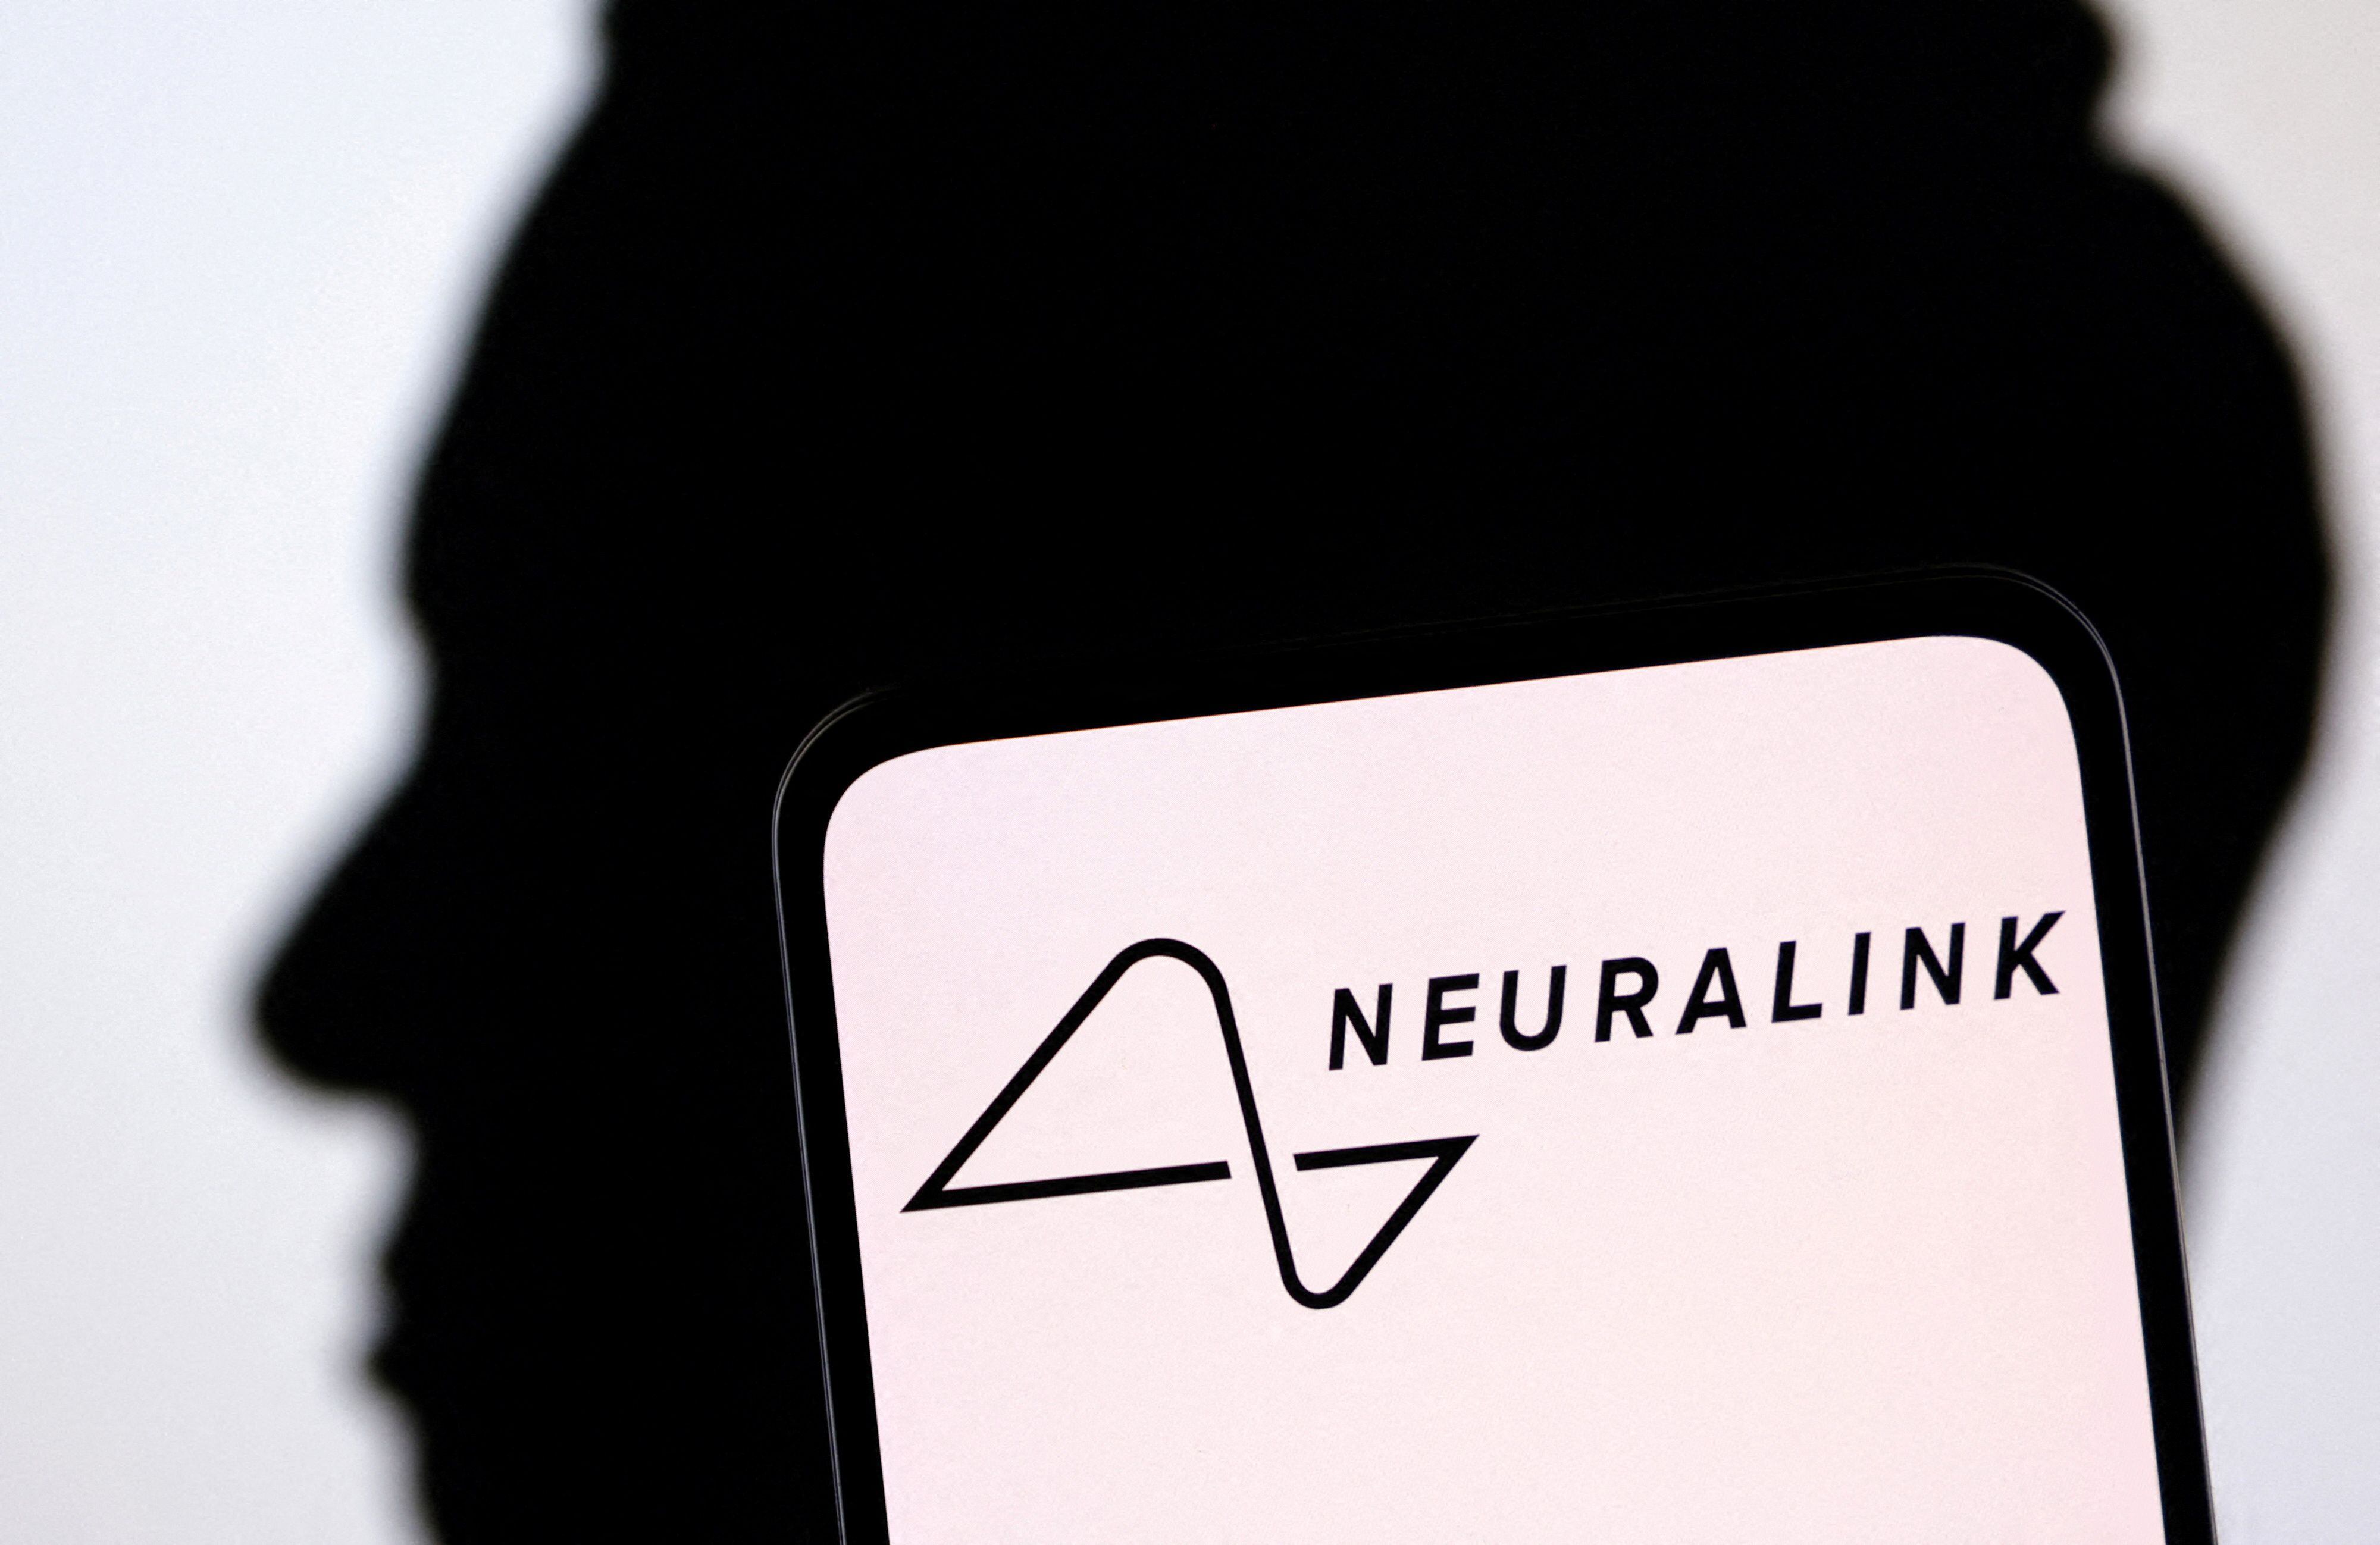 Neuralink avanza en su proyecto de interfaces cerebro-computadora (BCI) tras implantar exitosamente su primer dispositivo en un ser humano. (REUTERS/Dado Ruvic/Illustration)